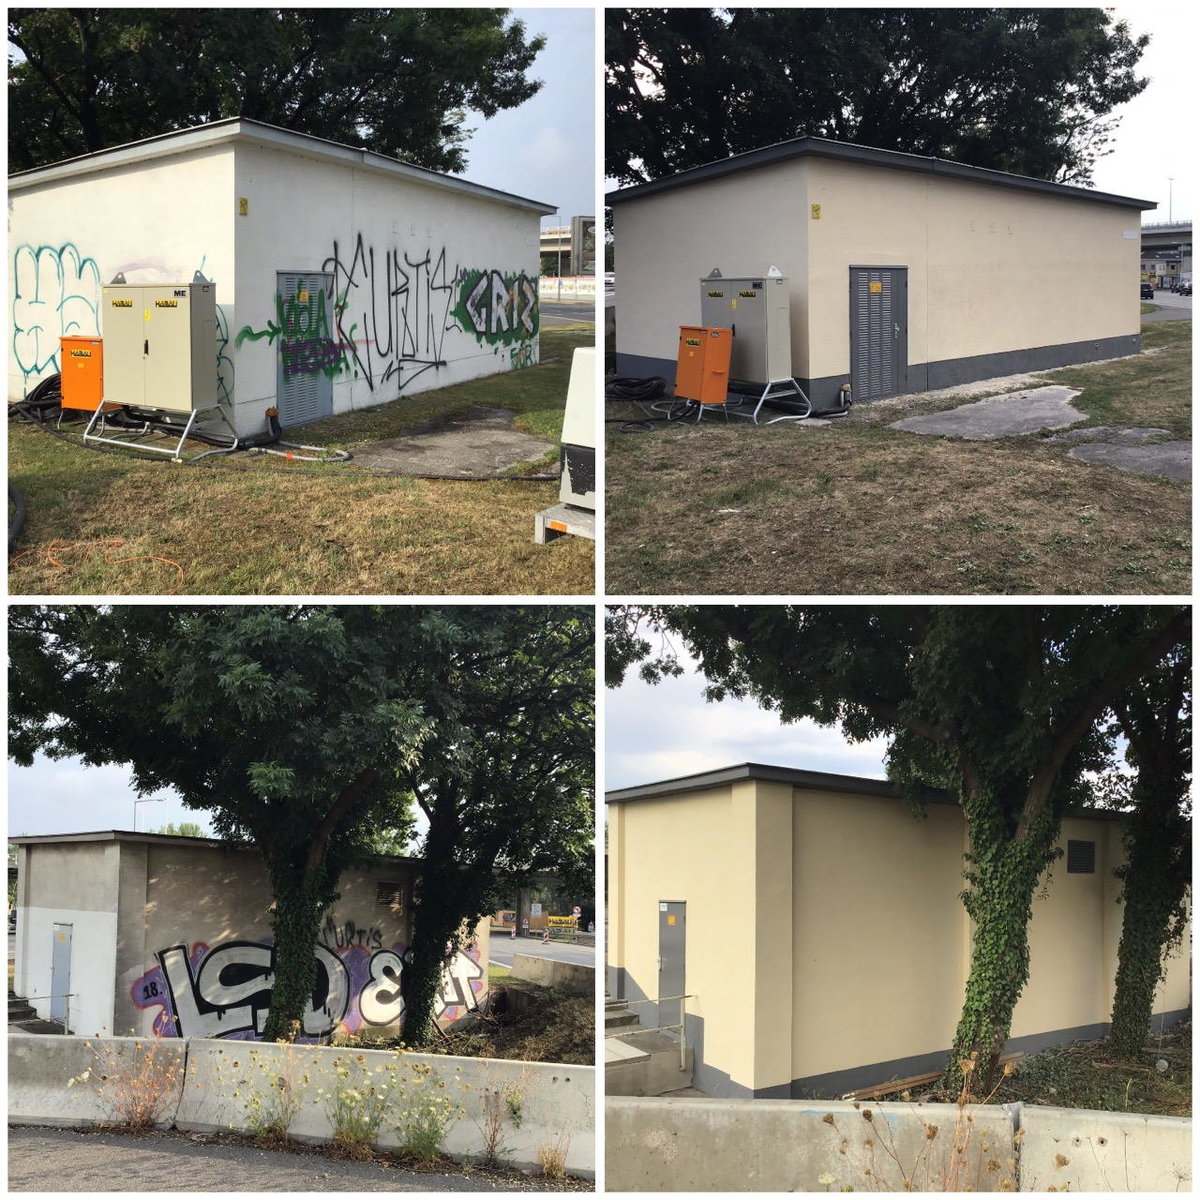 Graffitientfernung von jeglichen Wänden durch GraffitiStop